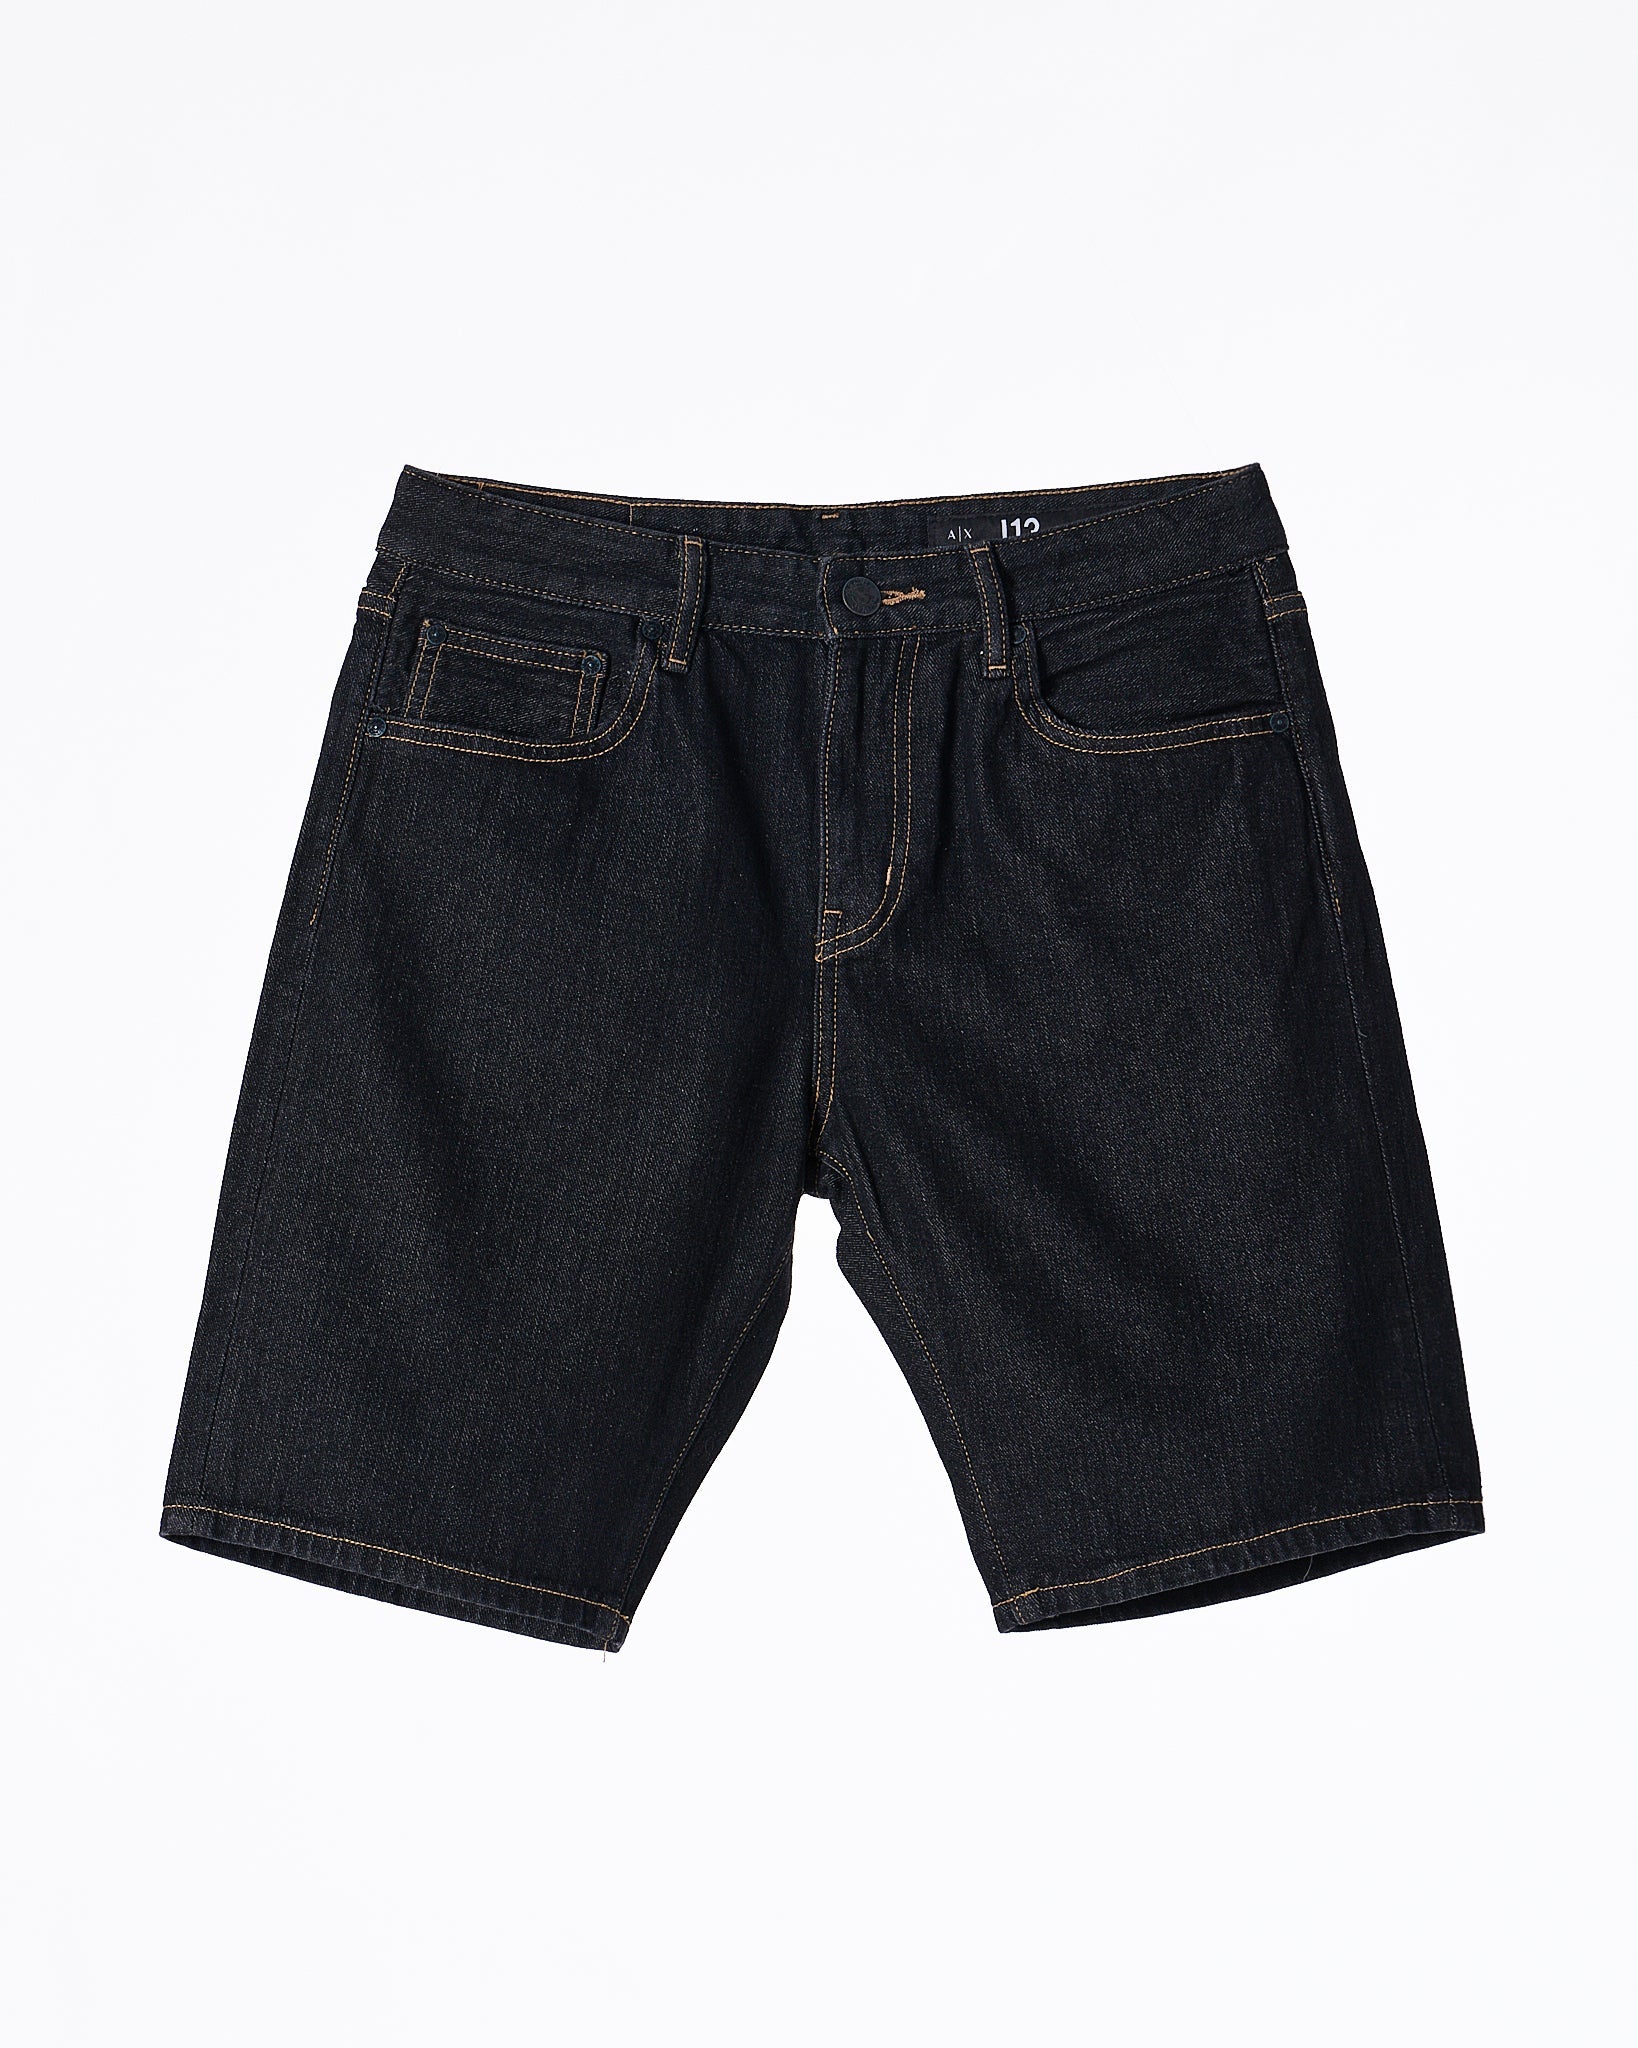 MOI OUTFIT-AX Men Black Short Jeans 17.90